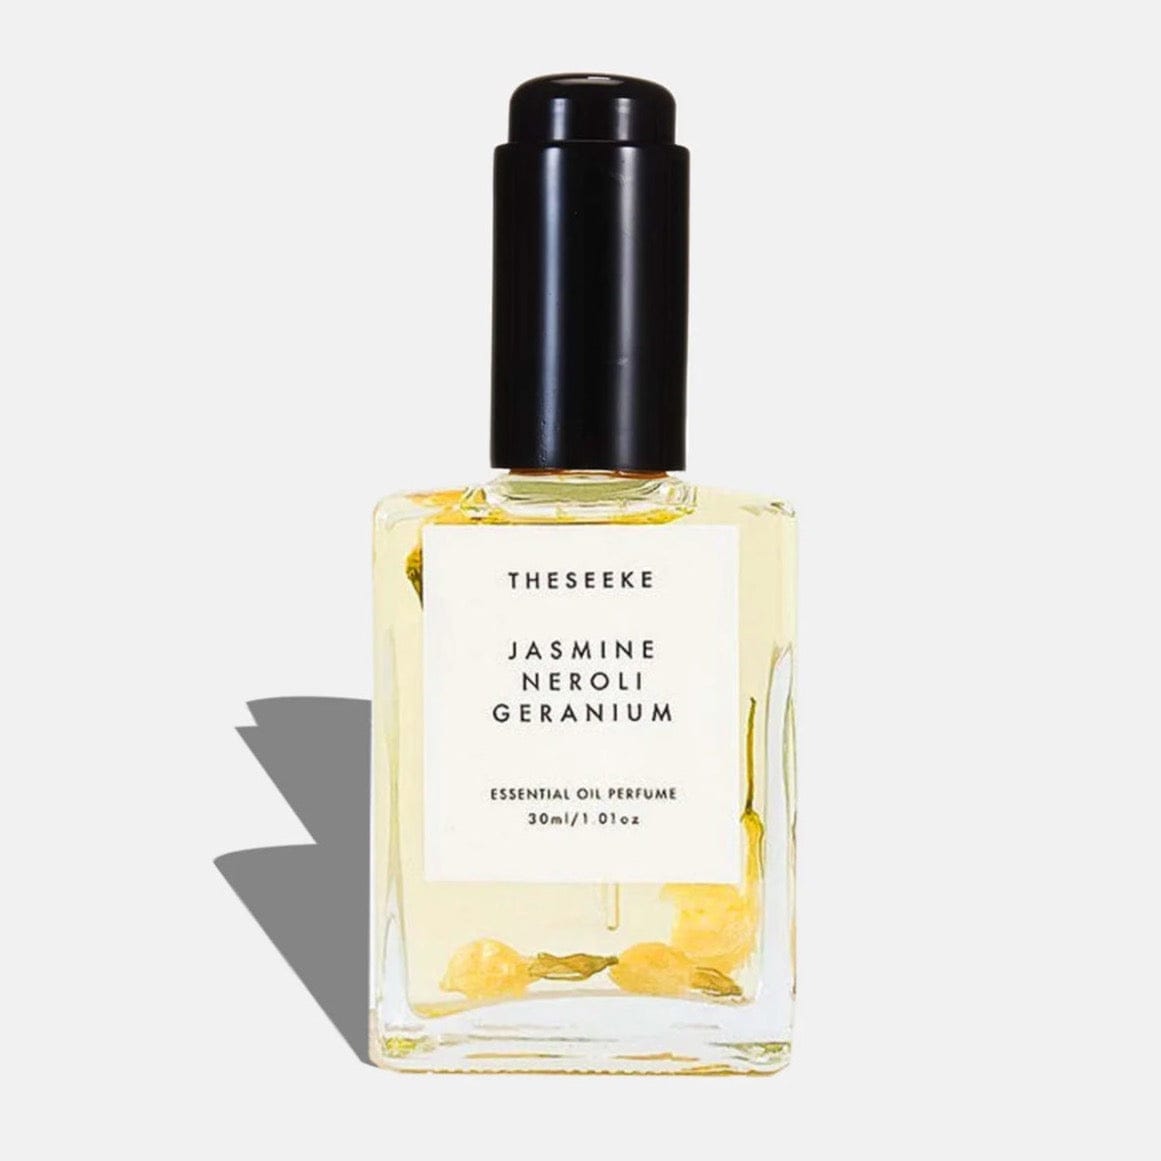 Jasmine Neroli Geranium Oil Perfume by The Seeke